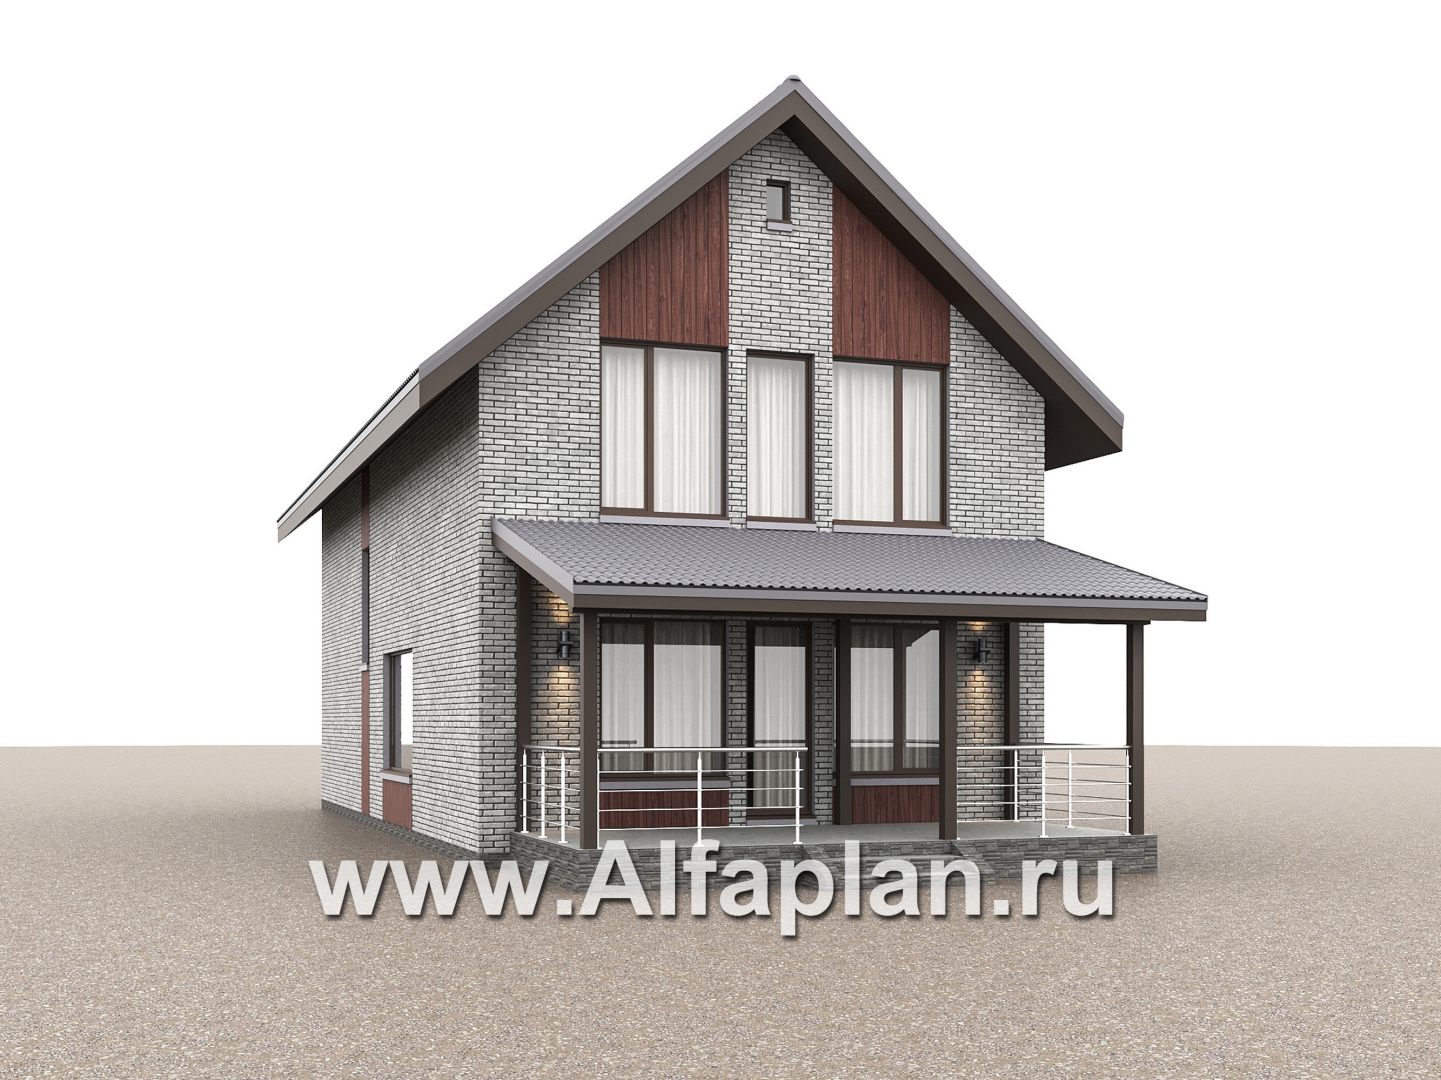 Проекты домов Альфаплан - "Мой путь" - проект дома из кирпича, 2 этажа, с террасой и с 5-ю спальнями - дополнительное изображение №3